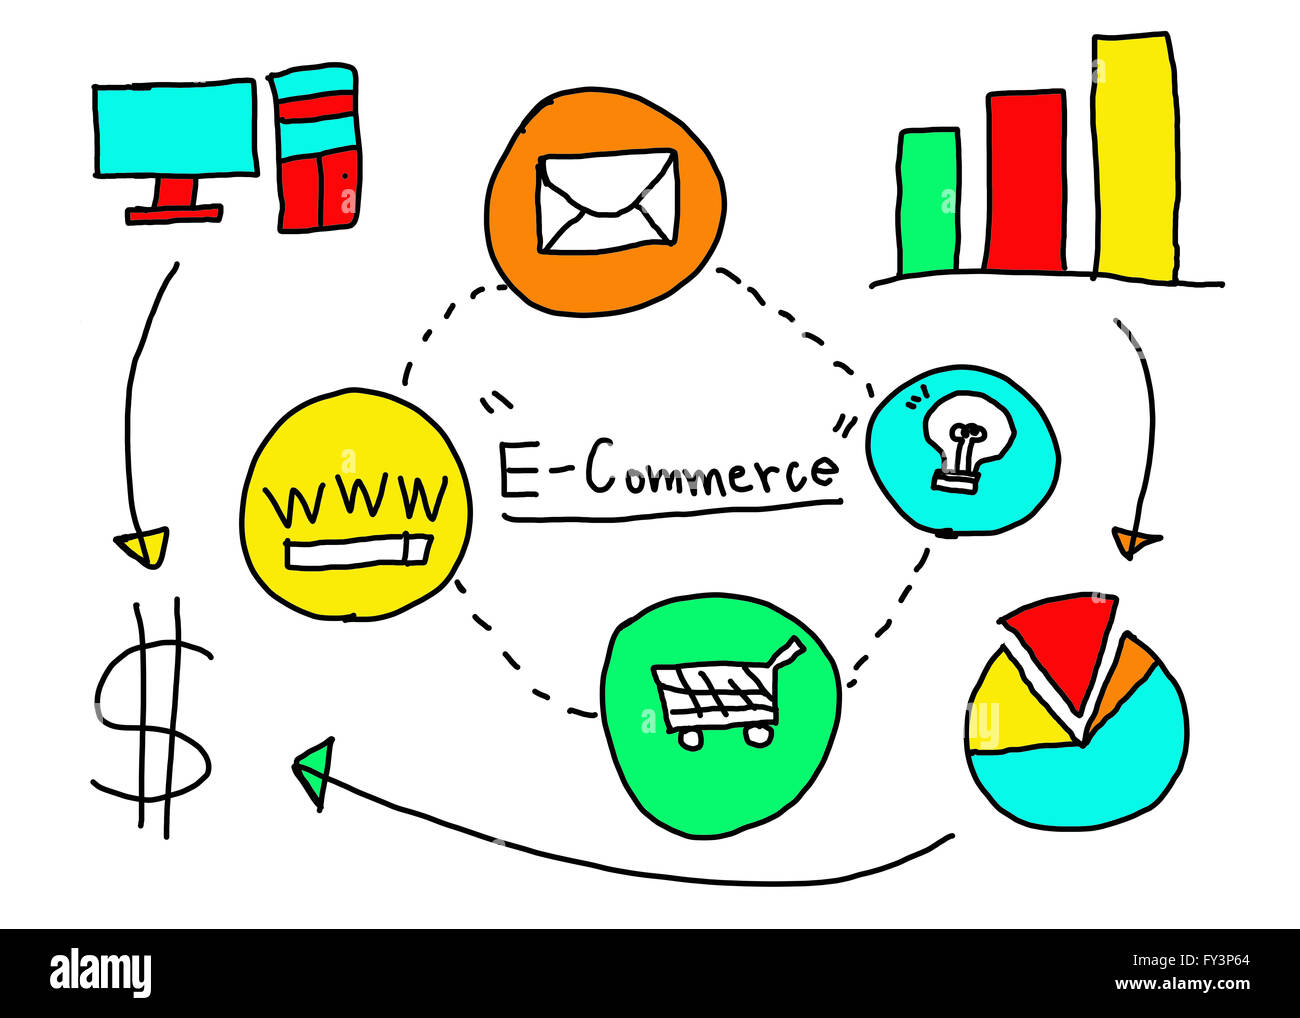 Business-Konzept E-Commerce in Handzeichnung Idee für den elektronischen Handel. Stockfoto